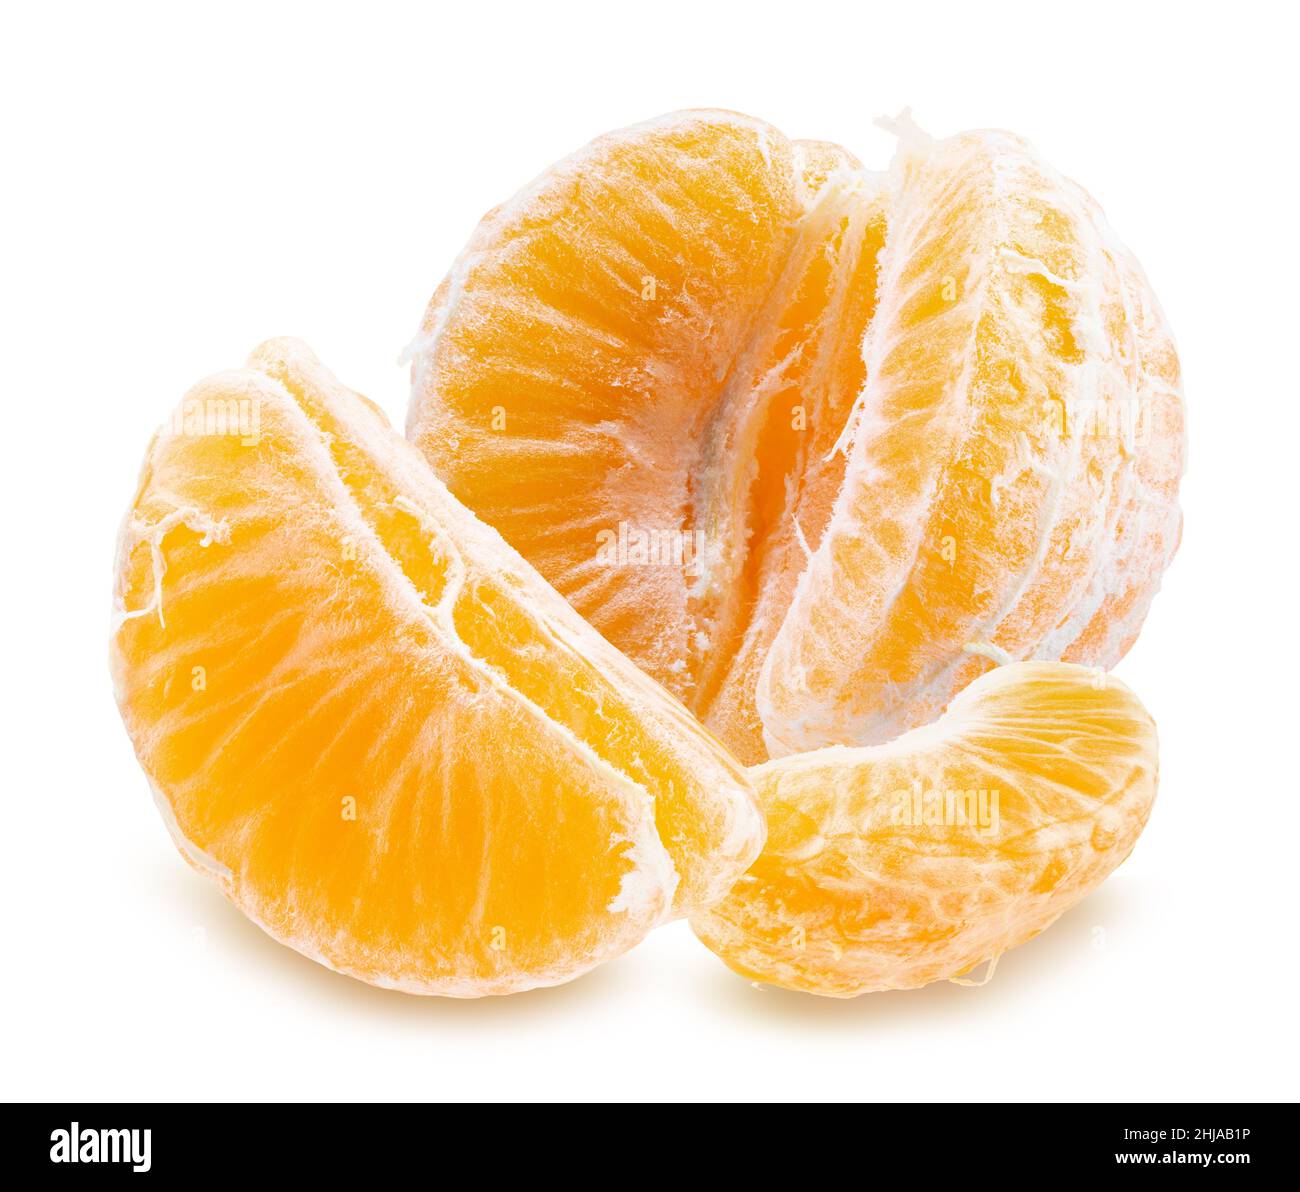 segmentos pelados de tangerina dulce aislados sobre fondo blanco con ruta de corte. Foto de stock